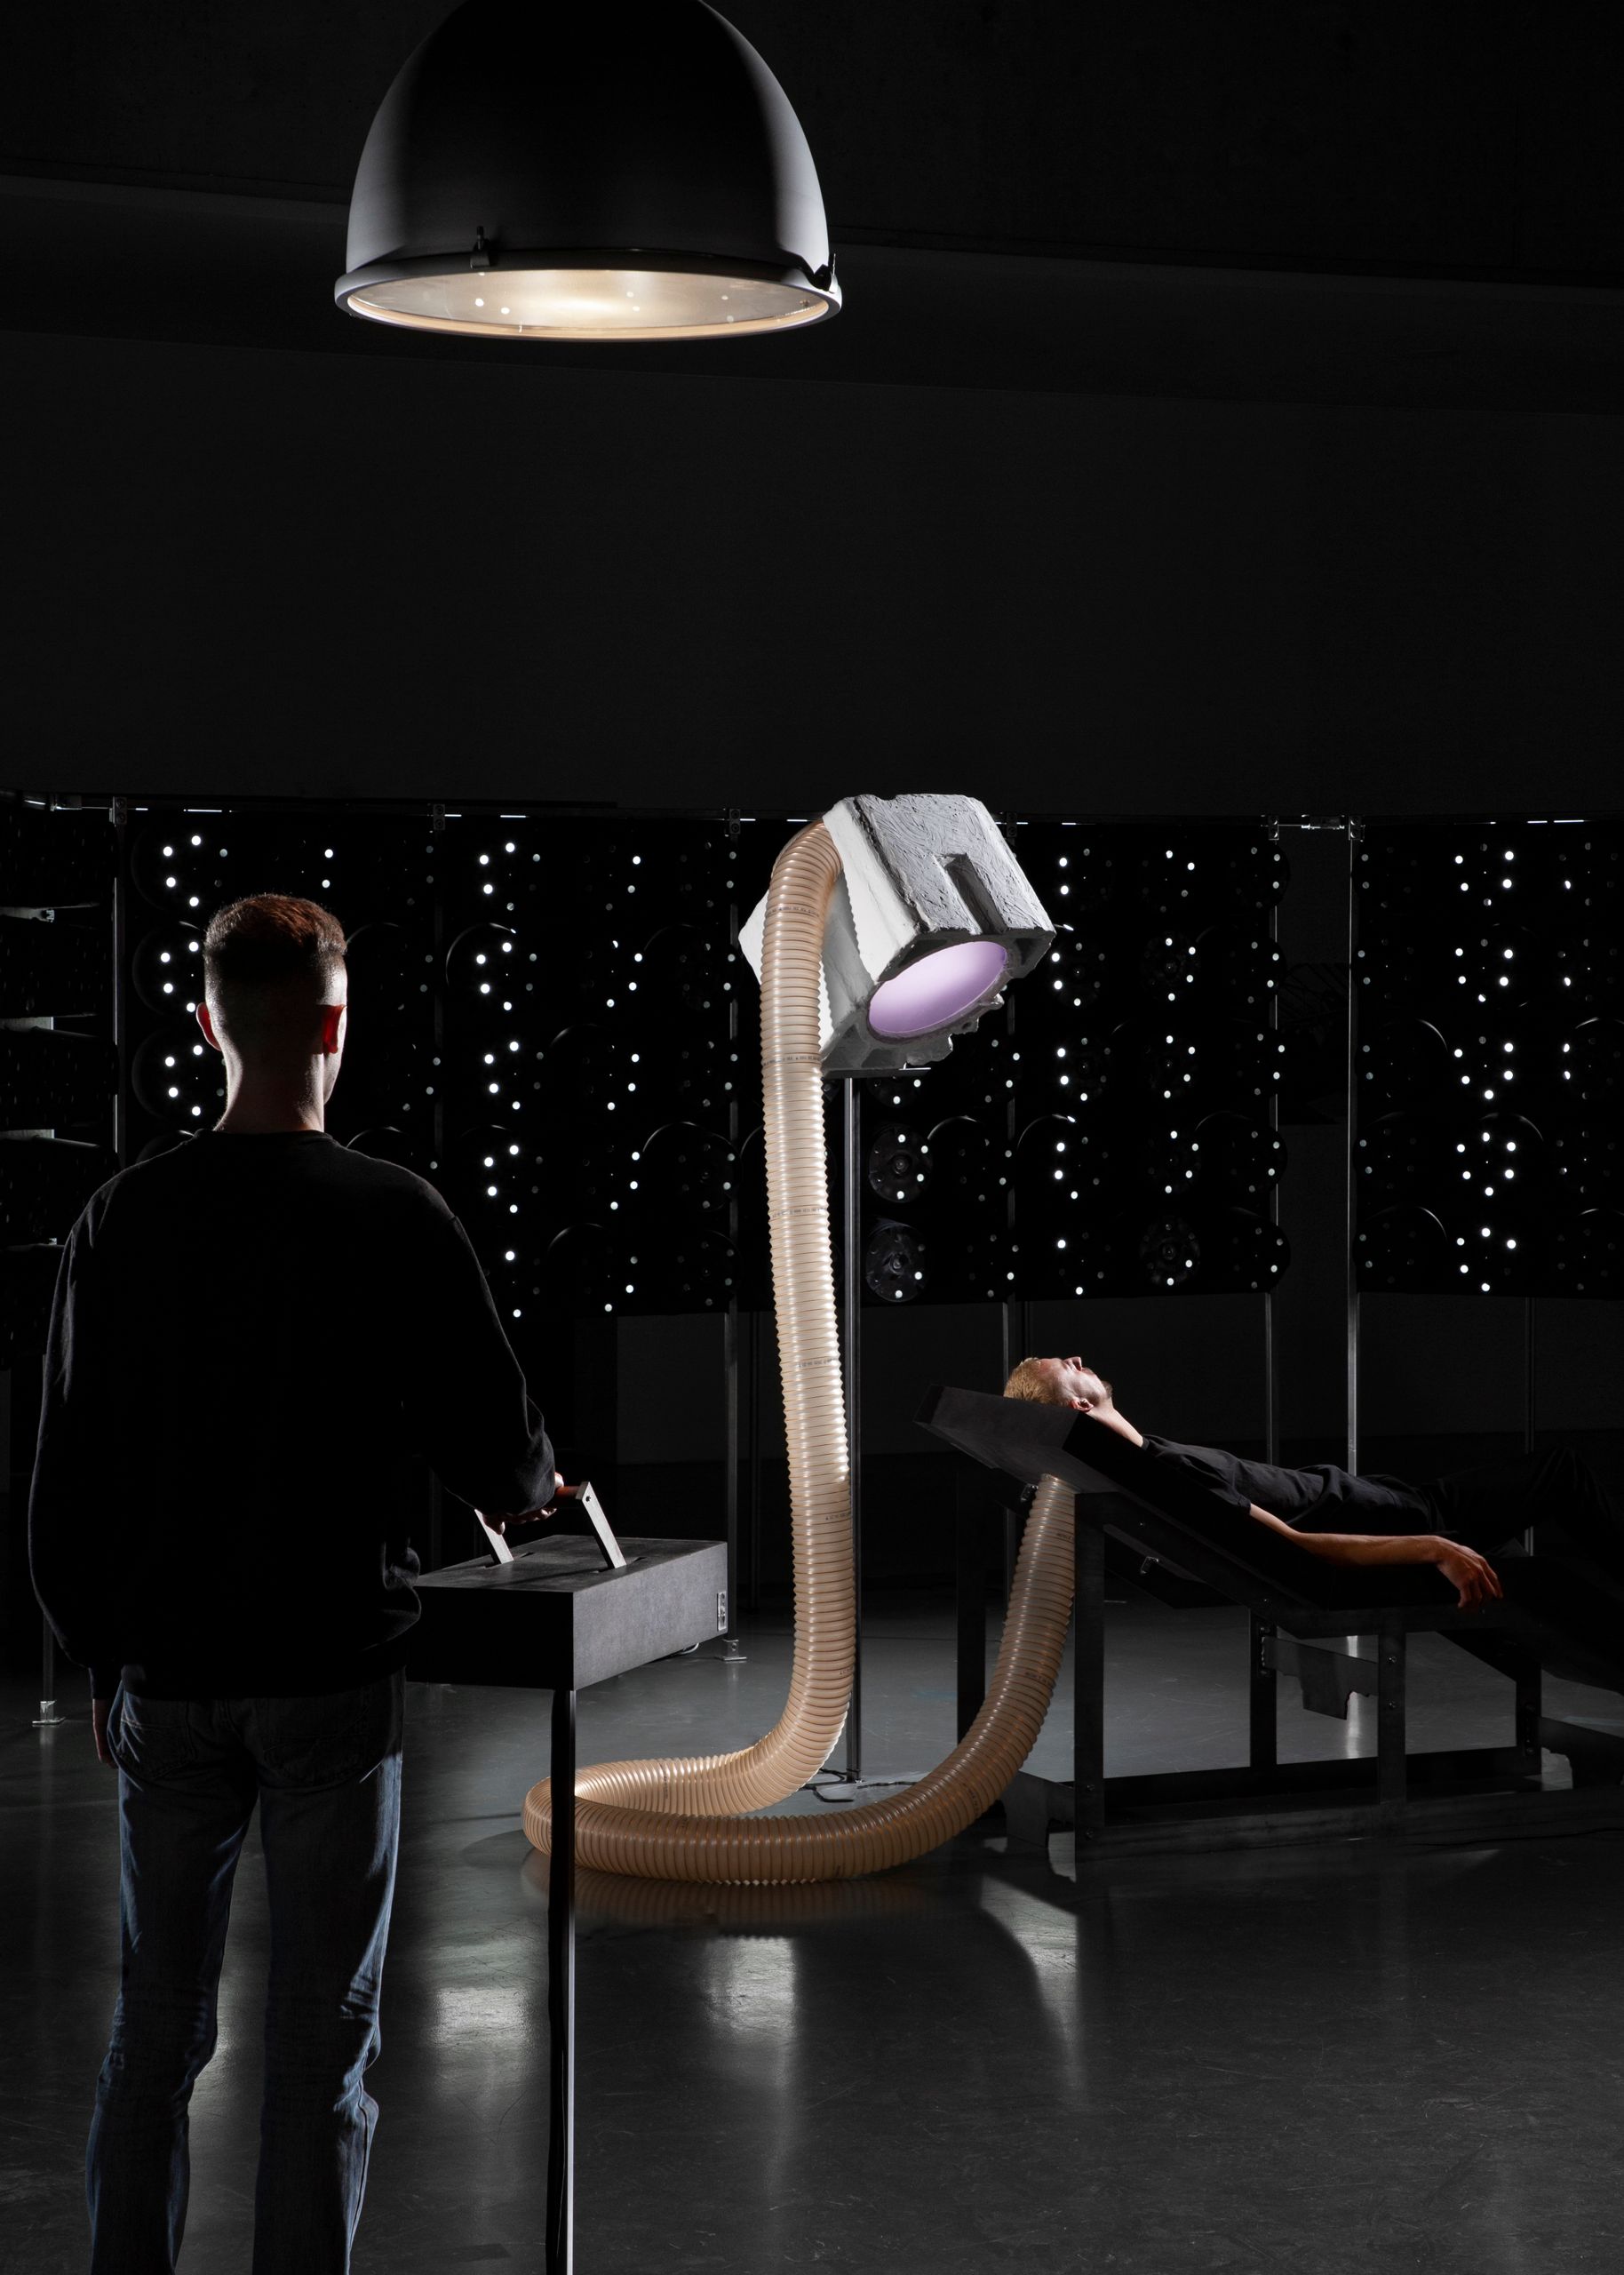 Projet de diplôme master design espace et communication tommy poiré, Chaise longue dans laboratoire expérimental entourée de faisceaux lumineux et d'un projecteur de lumière relié à la table par un tube à soufflet